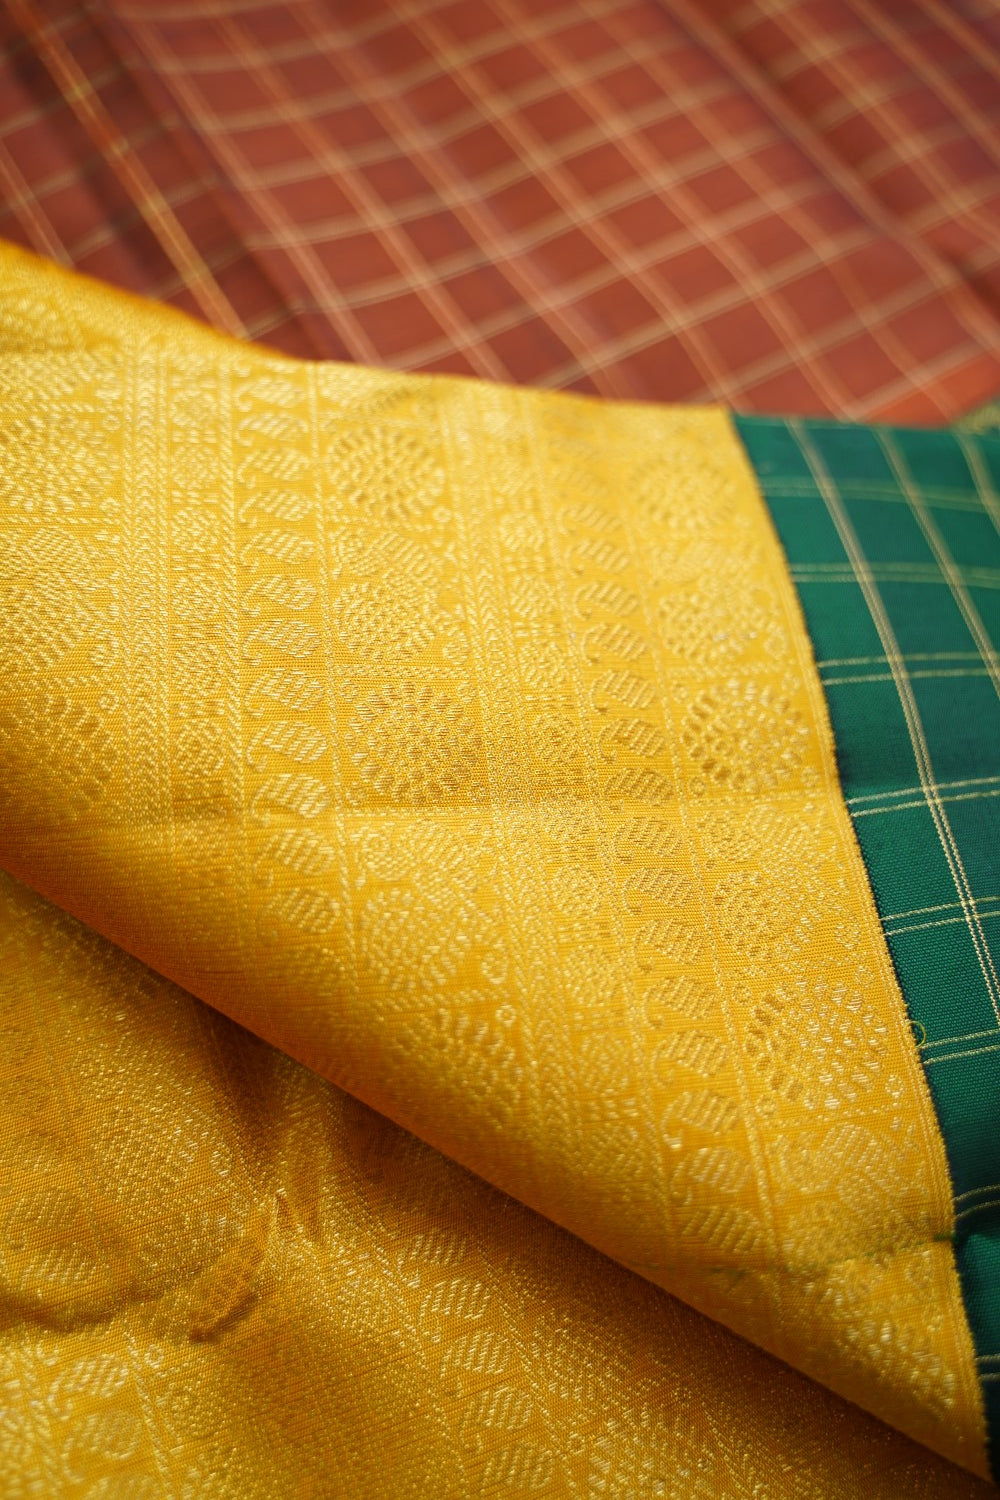 Yellow Varisaipet Pure 4gm Gold  Kanchi Silk Saree With Ganga jamuna Border  PC10748